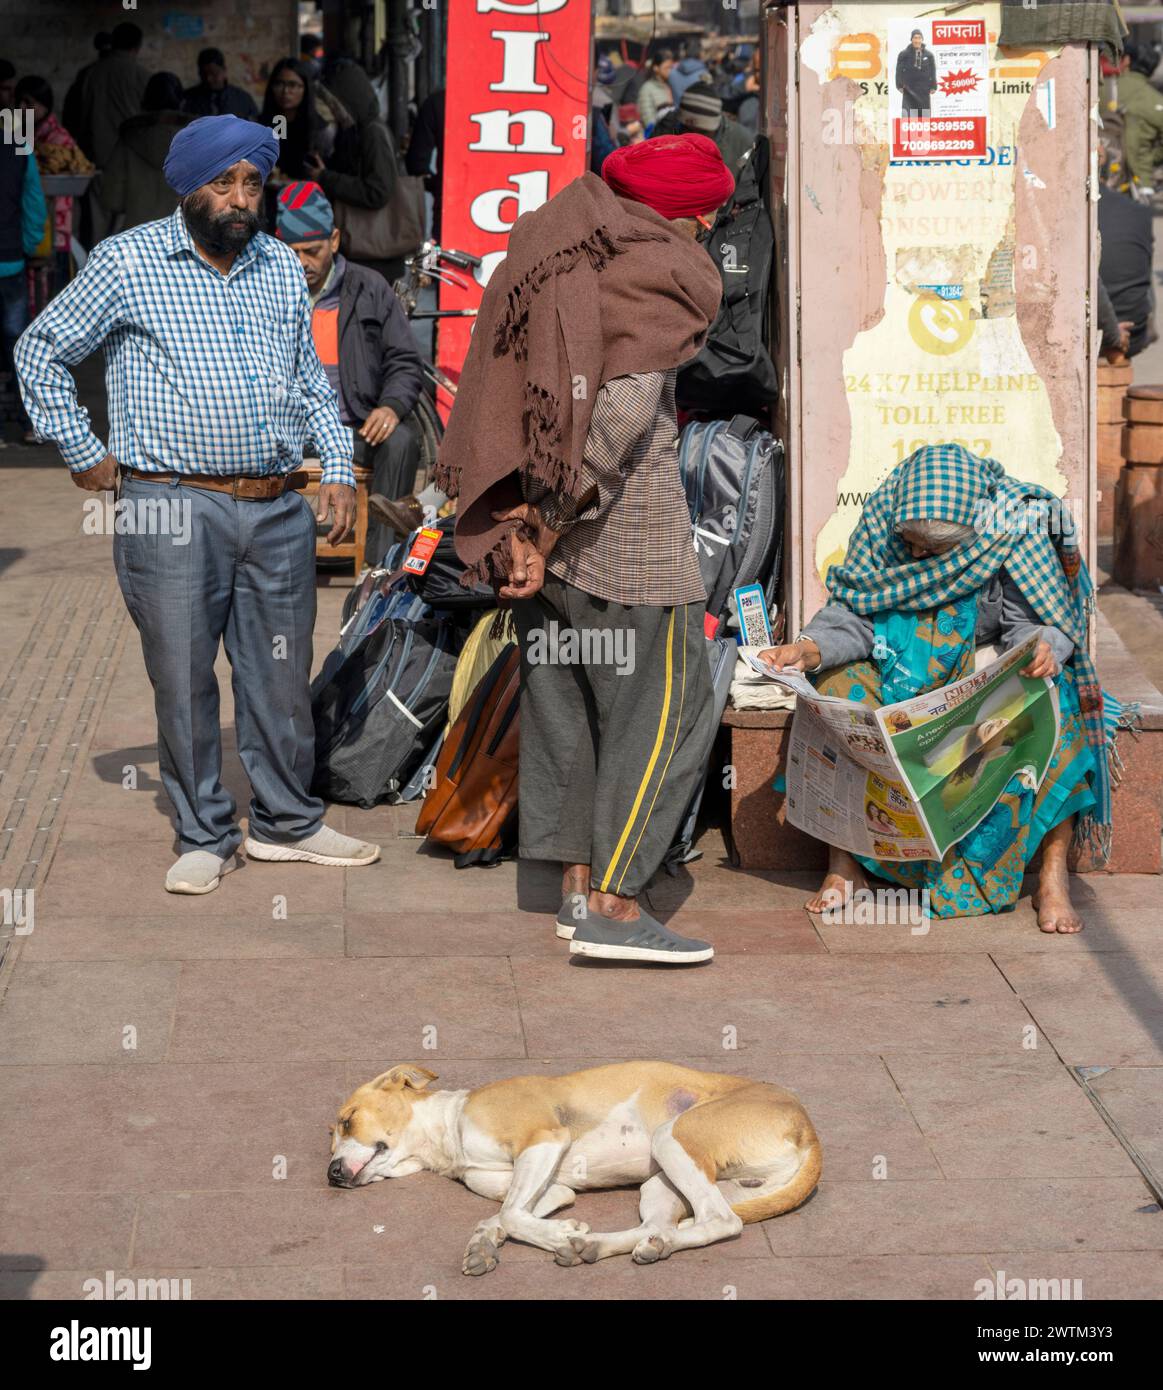 India, Old Delhi, Chandni Chowk, Strassenszene Stock Photo